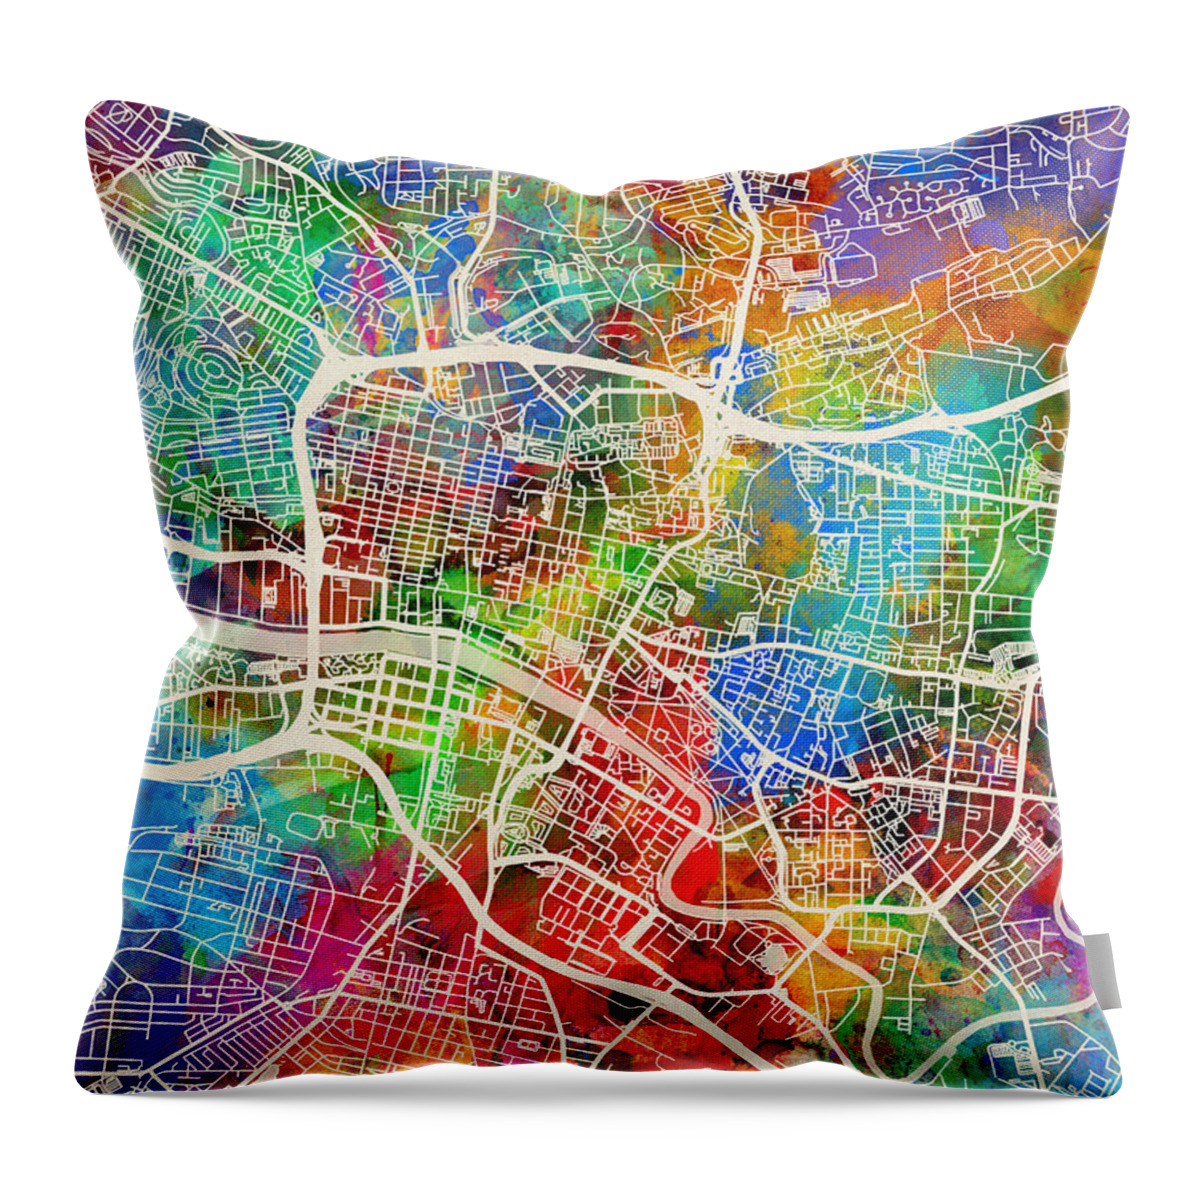 Street Map Throw Pillow featuring the digital art Glasgow Street Map #1 by Michael Tompsett